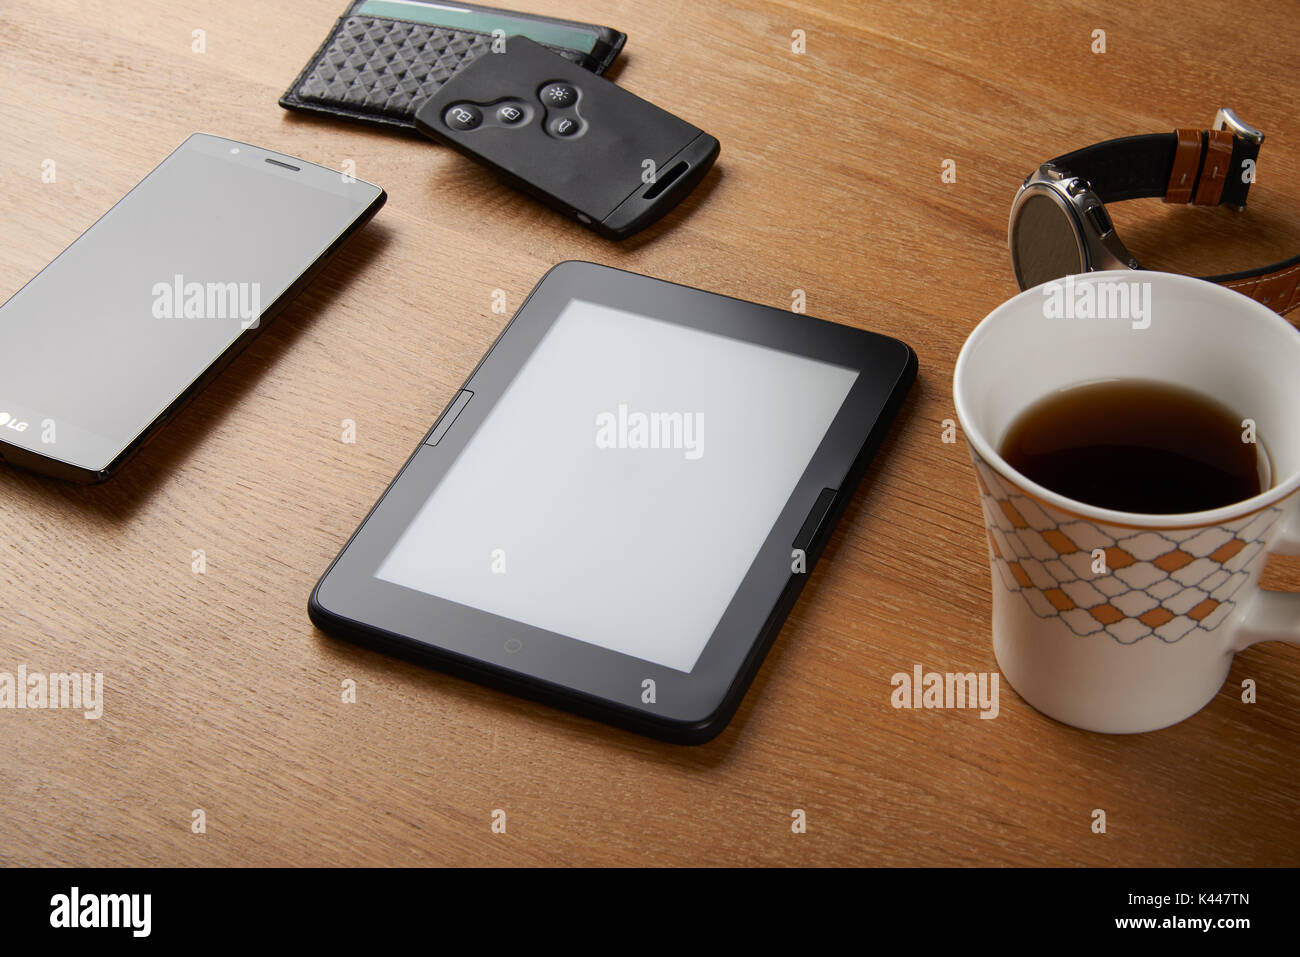 E-livre avec carte à puce, clé wallet, smart watch, smart phone et une tasse de café sur une table en bois. L'appareil est un appareil dédié pour readin Banque D'Images